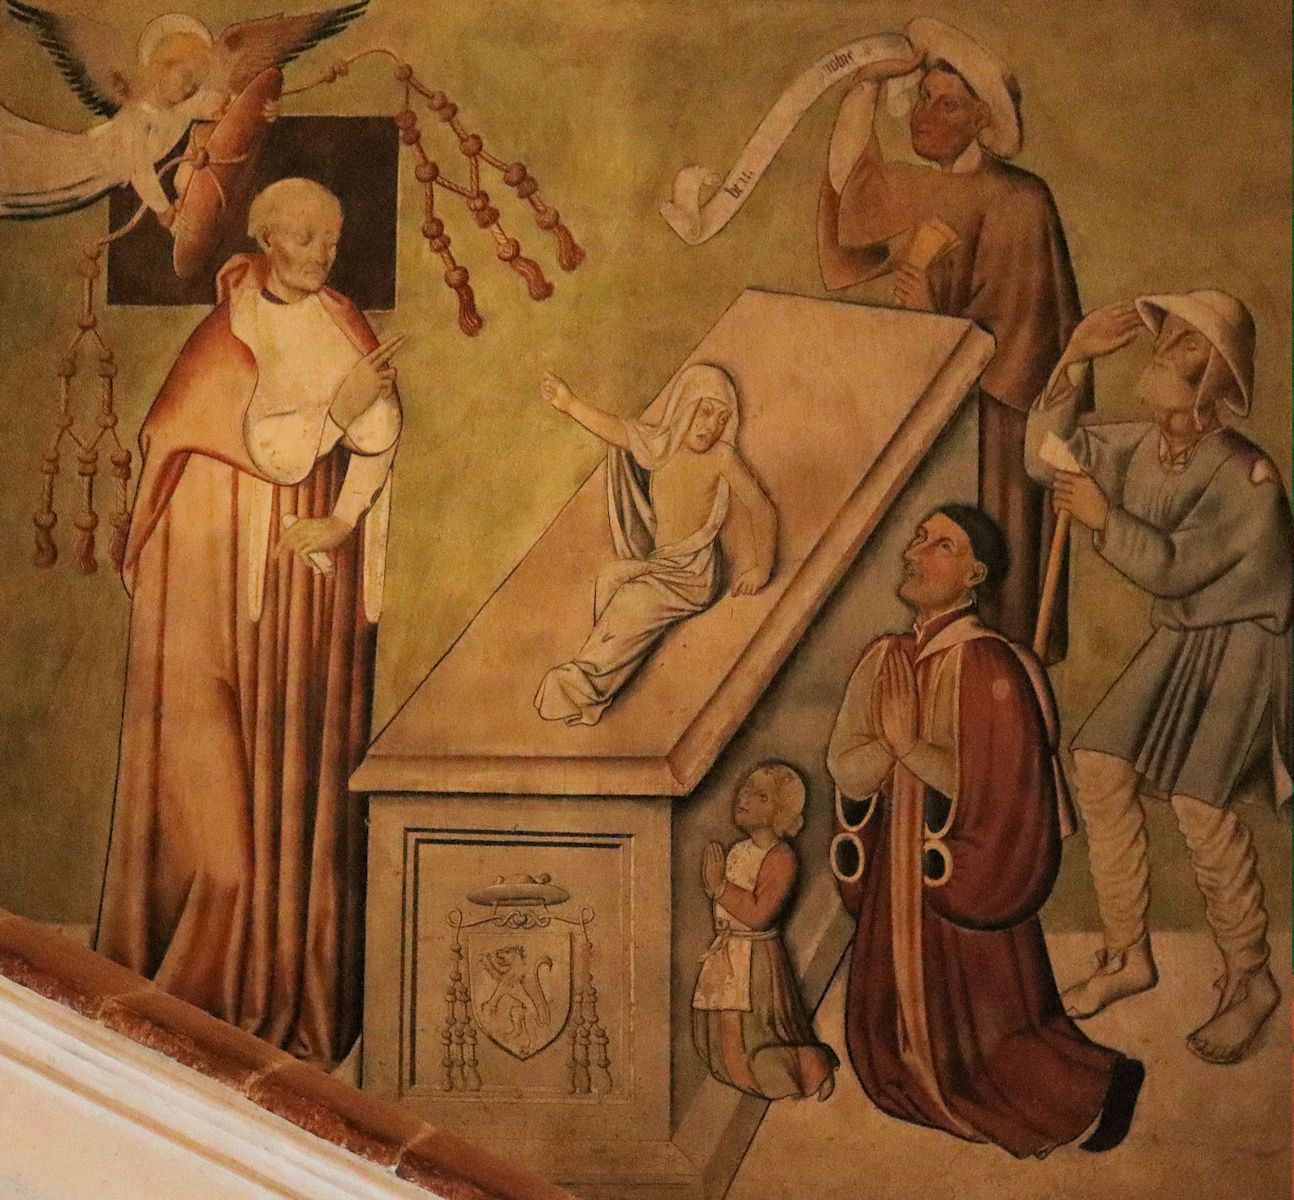 Von Petrus gewirktes Auferstehungswunder, 15. Jahrhundert, in der Kathedrale in Ivrea bei Turin